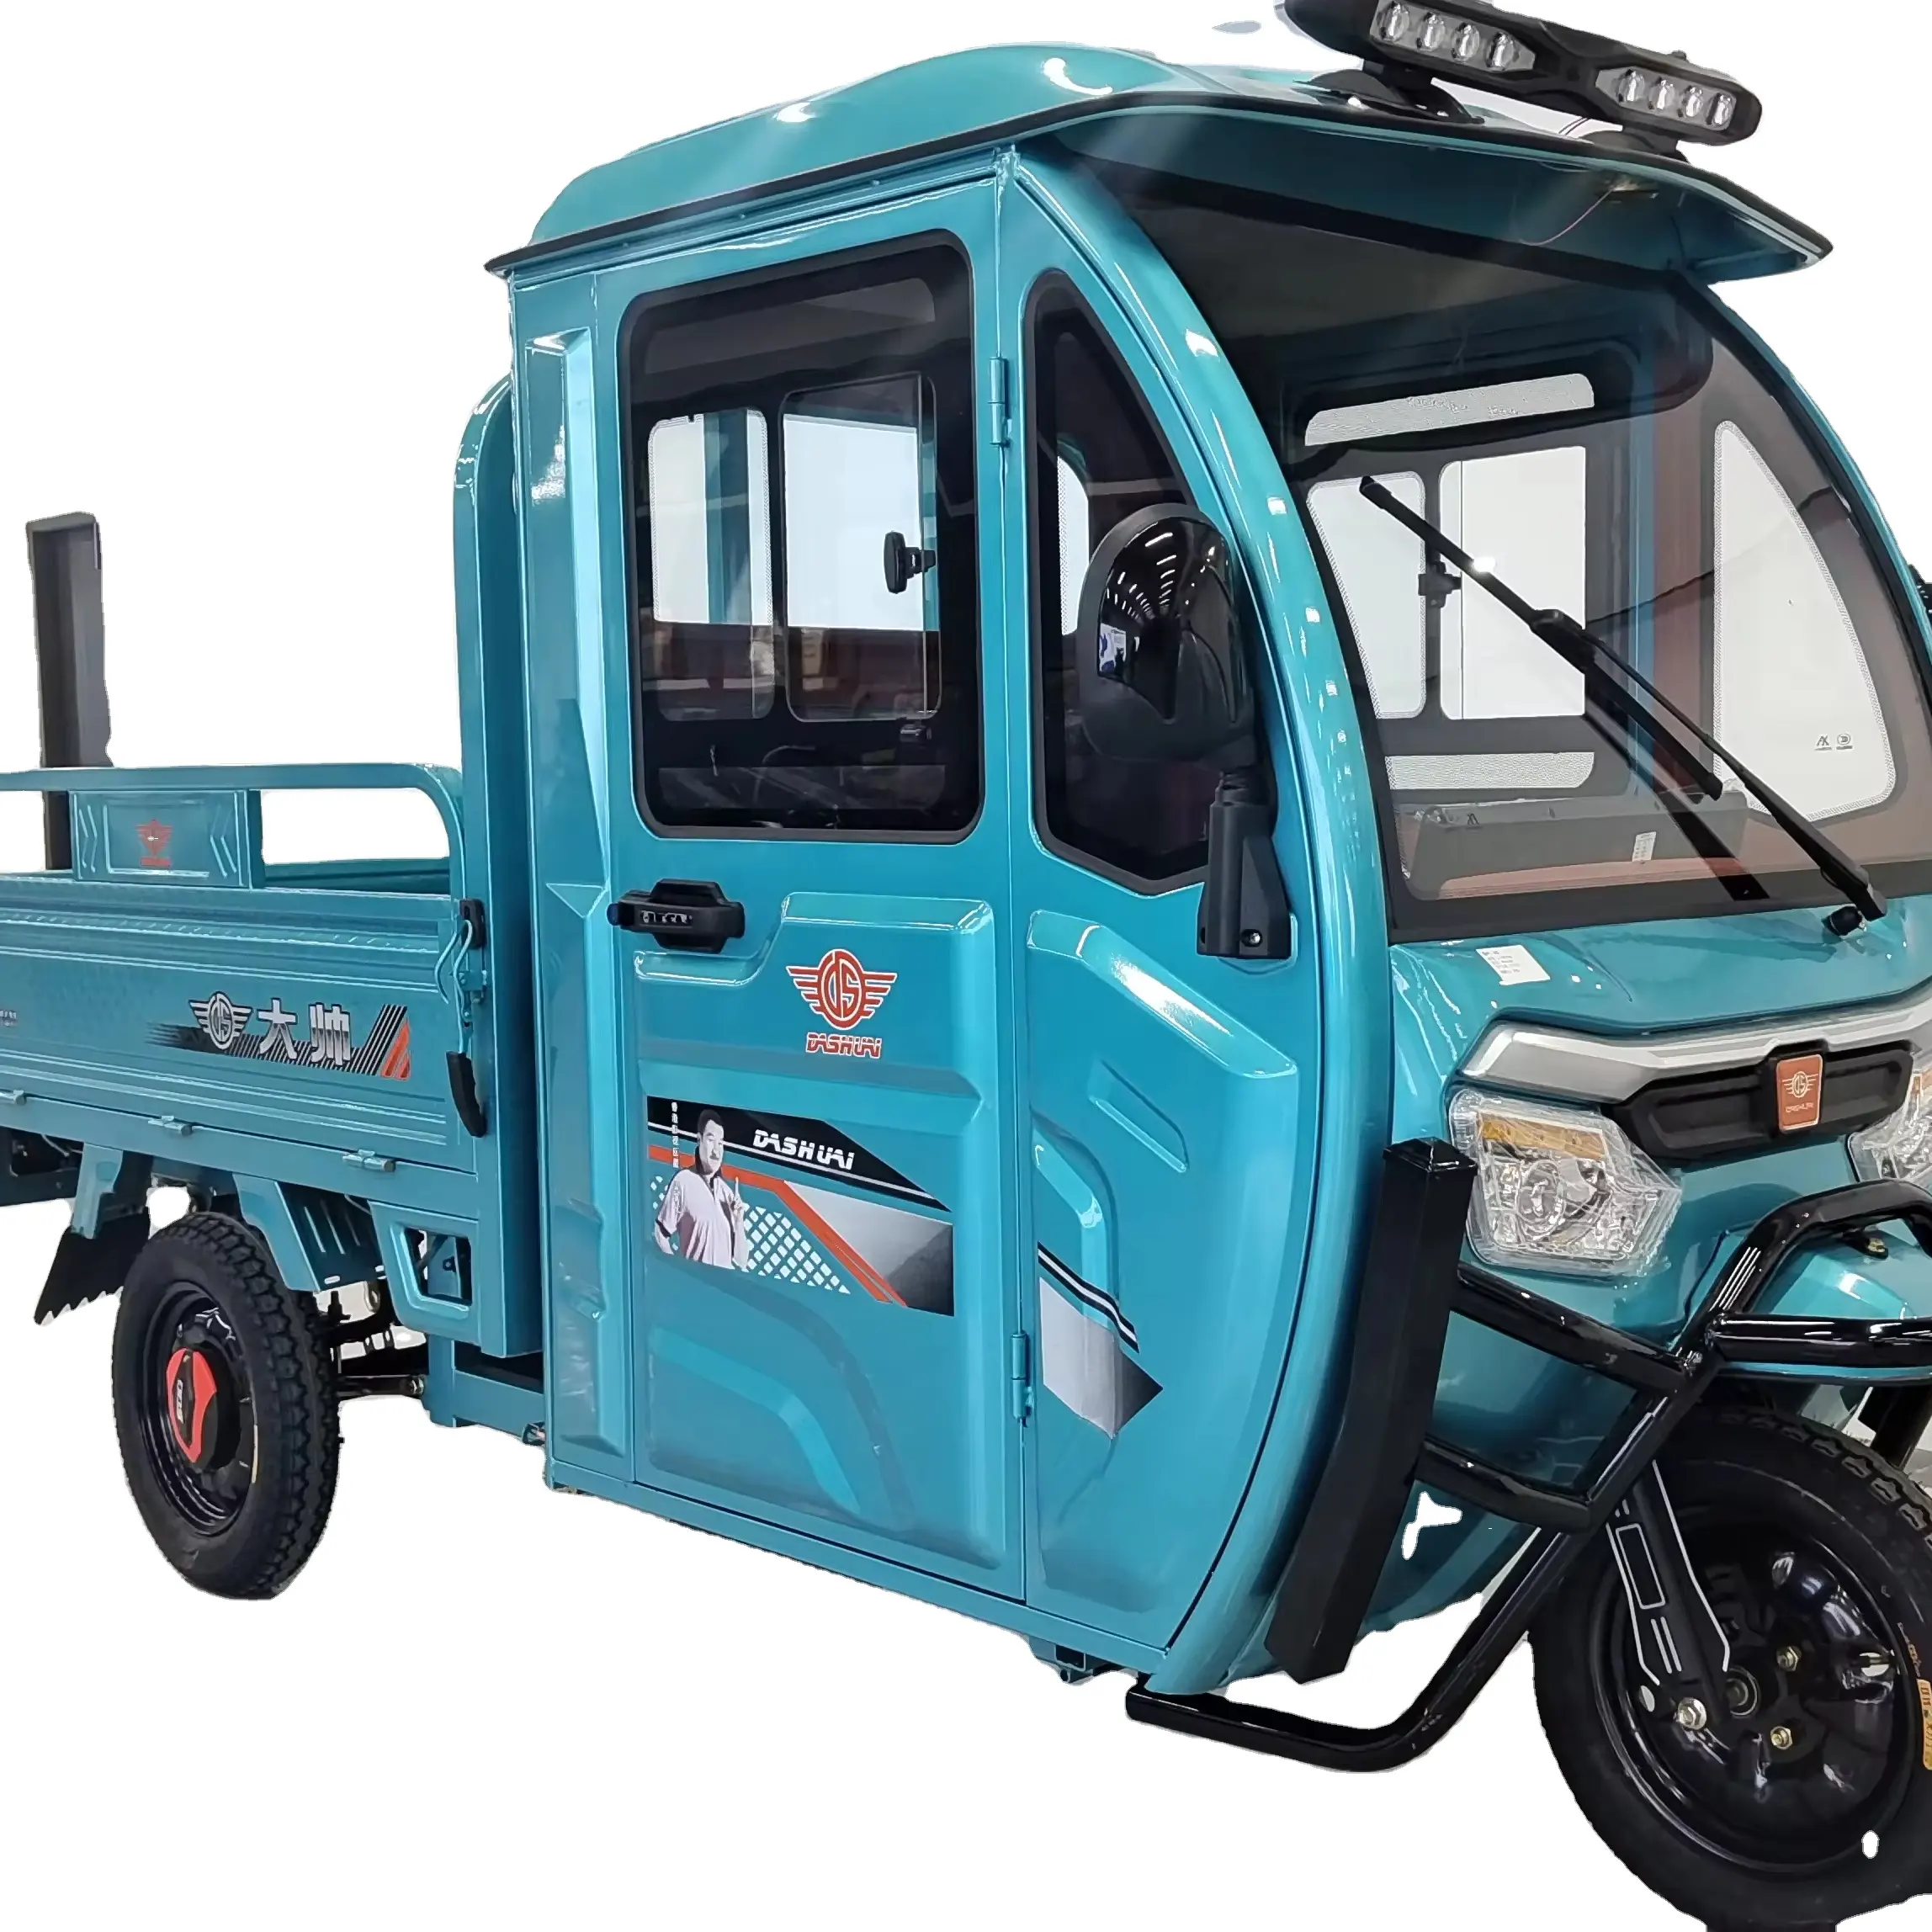 Ladungsdreirad elektrisches Dreirad Tuk Tuk 3-Rad-Fahrzeug mit 1000 W Motor und Ladebett